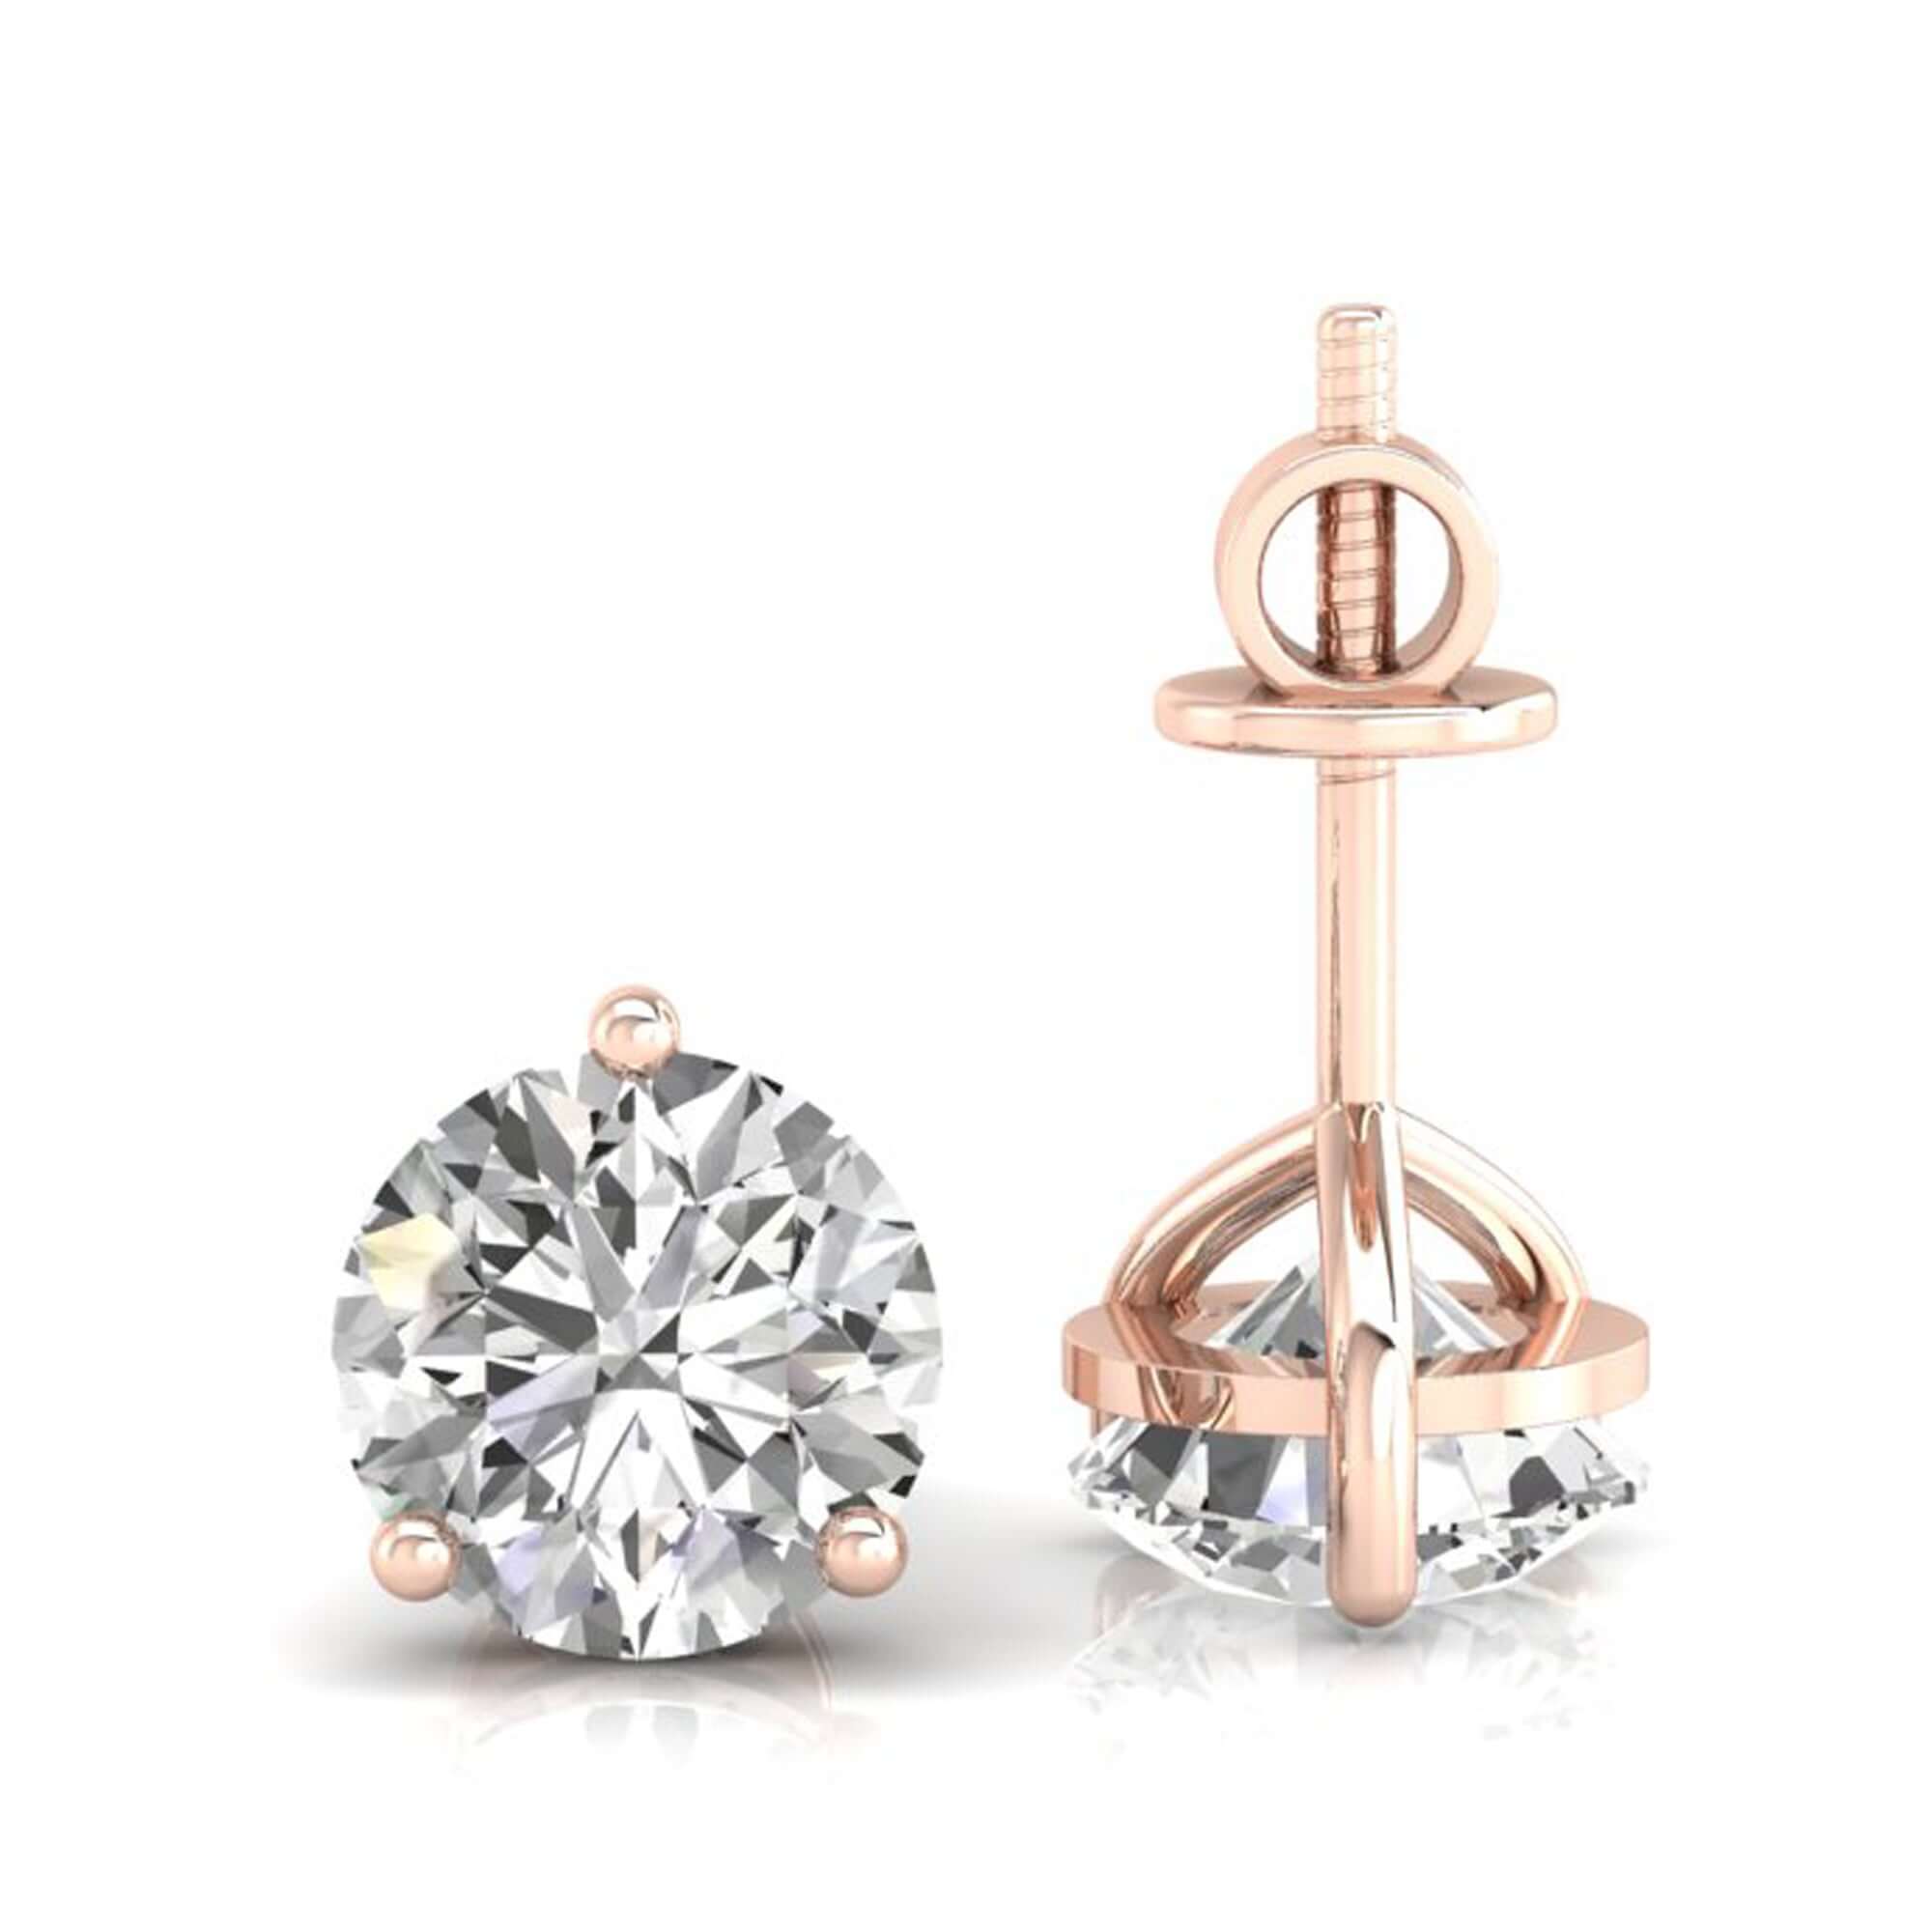 moissanite earrings - diamondrensu